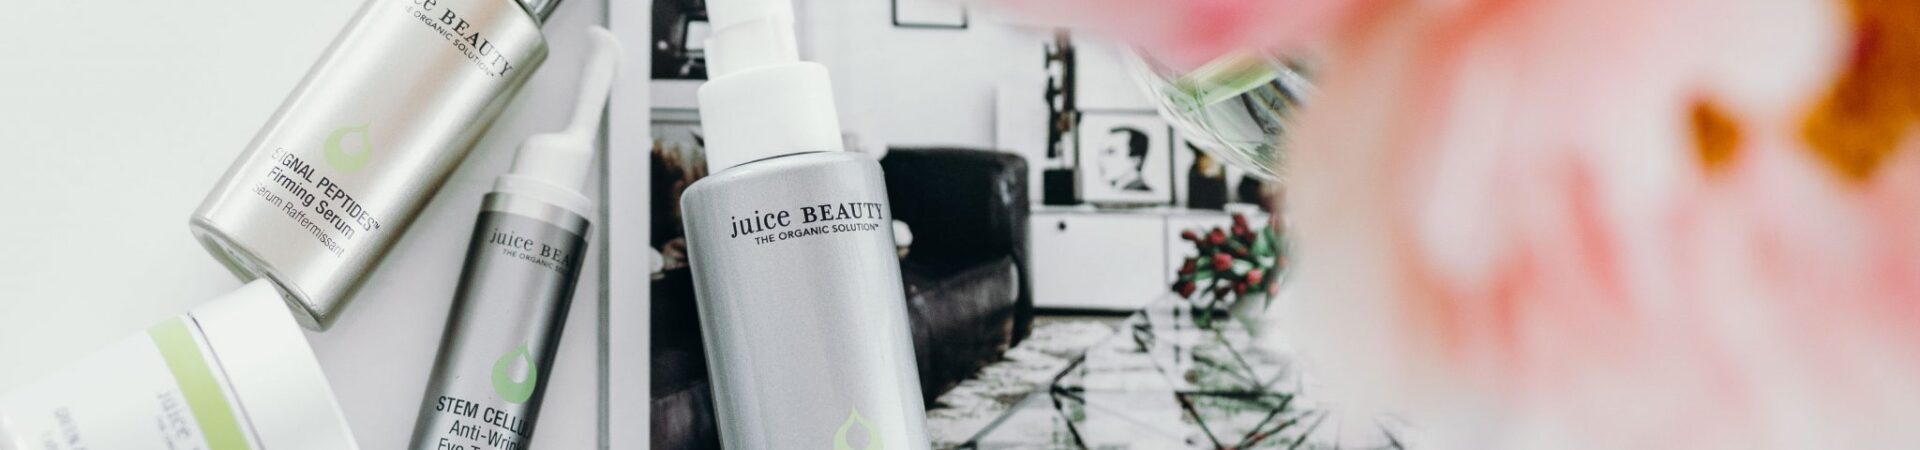 Juice Beauty Cyber Monday 2020 2 1920x450 - Juice Beauty Cyber Monday 2022